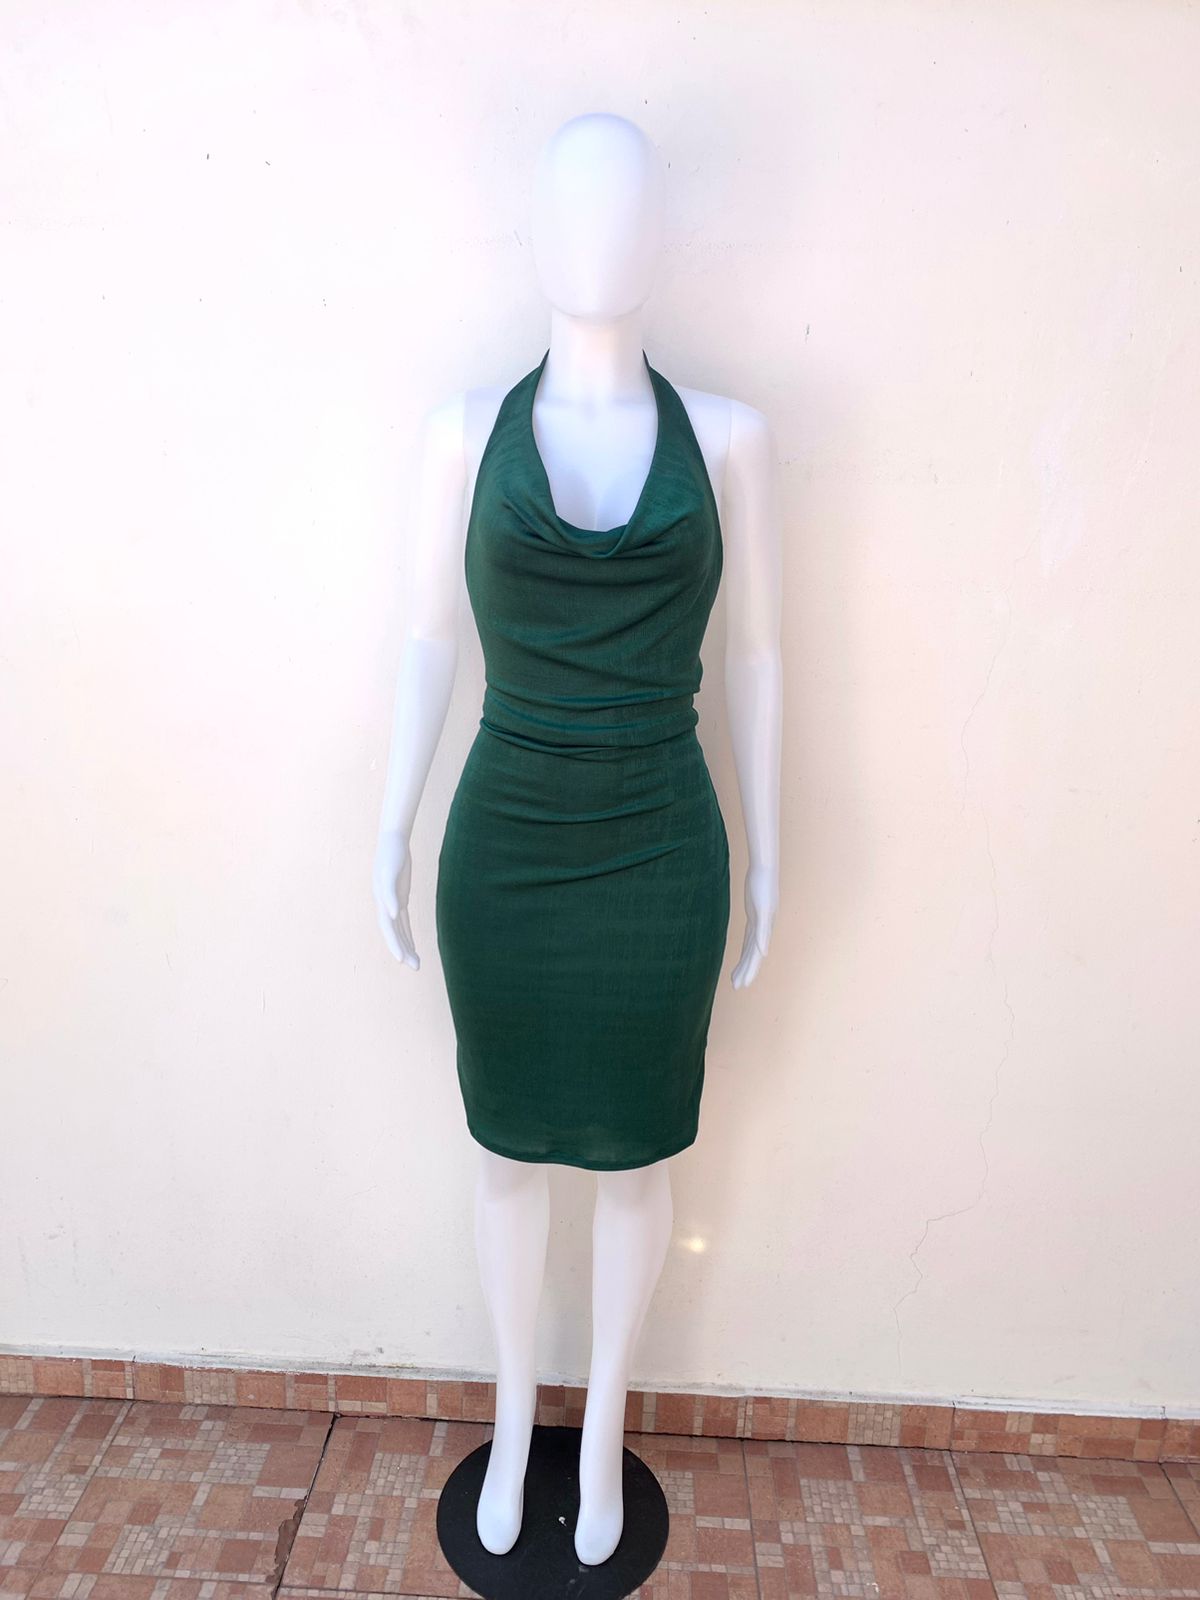 Vestido Fashion Nova original de color hunter ( verde ) de tela brillante espalda descubierta